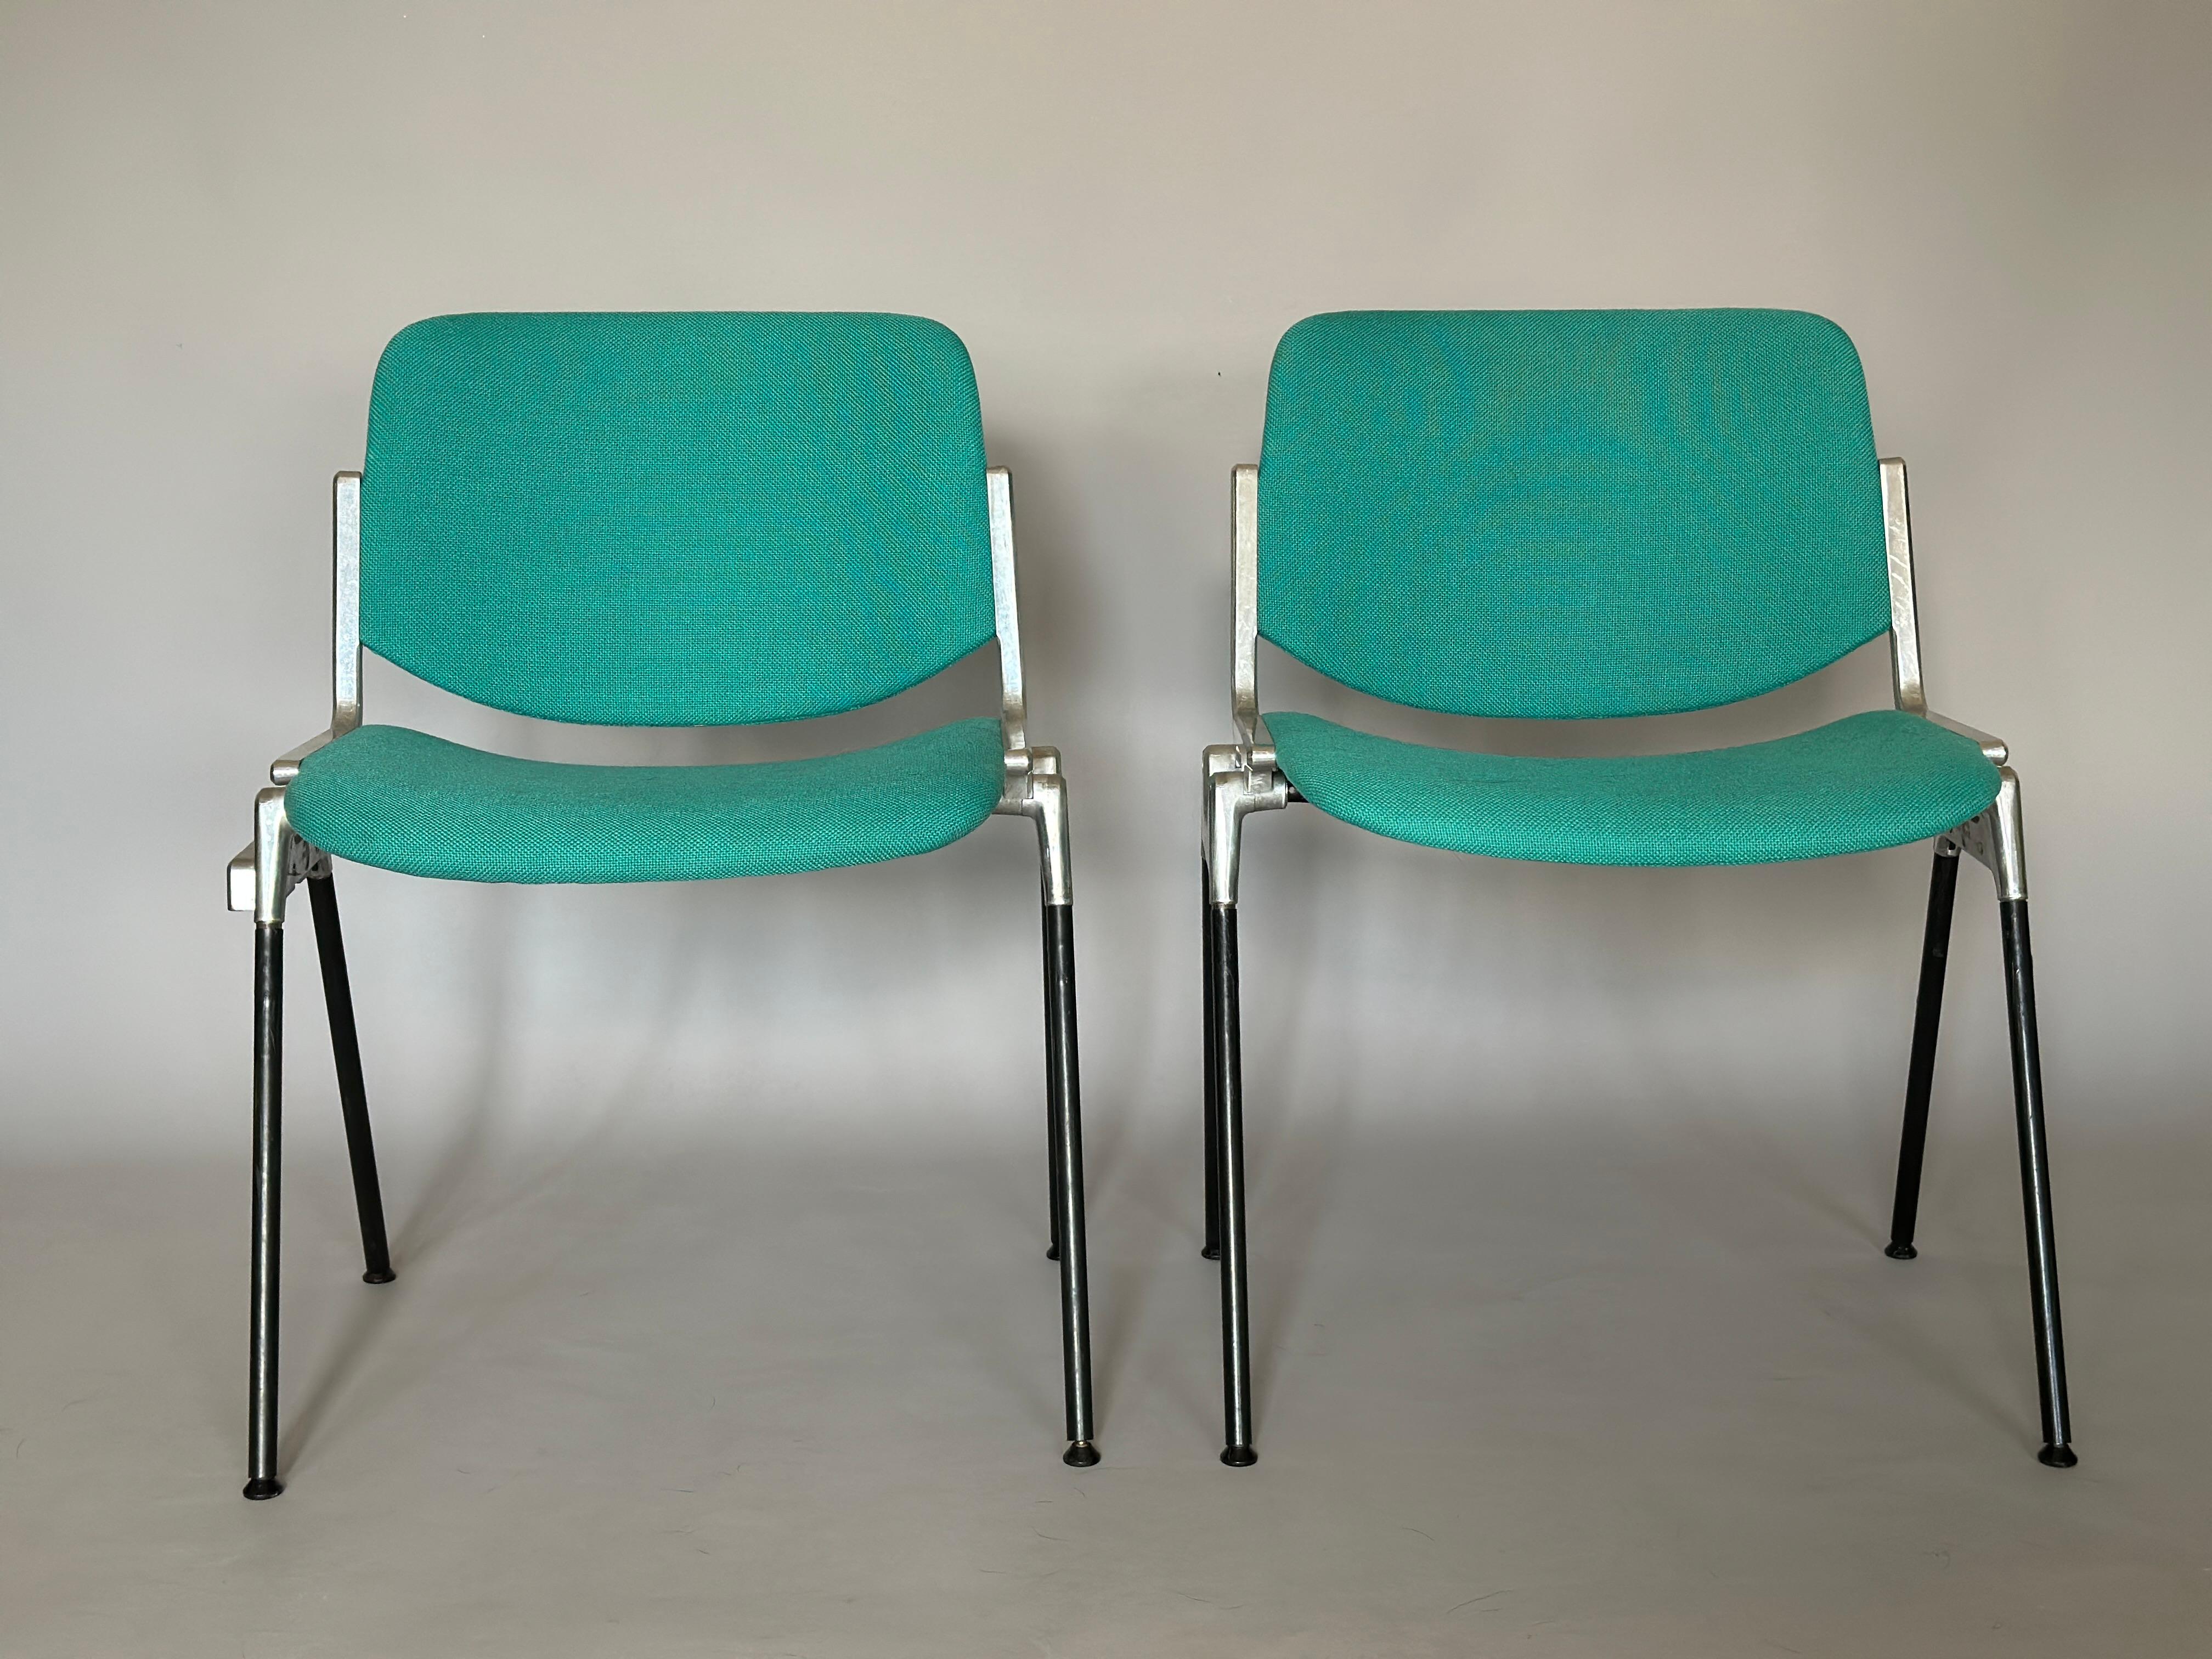 Quatre chaises Anonima Castelli DSG 106 dessinées par Giancarlo Piretti, structure en aluminium, en très bon état.